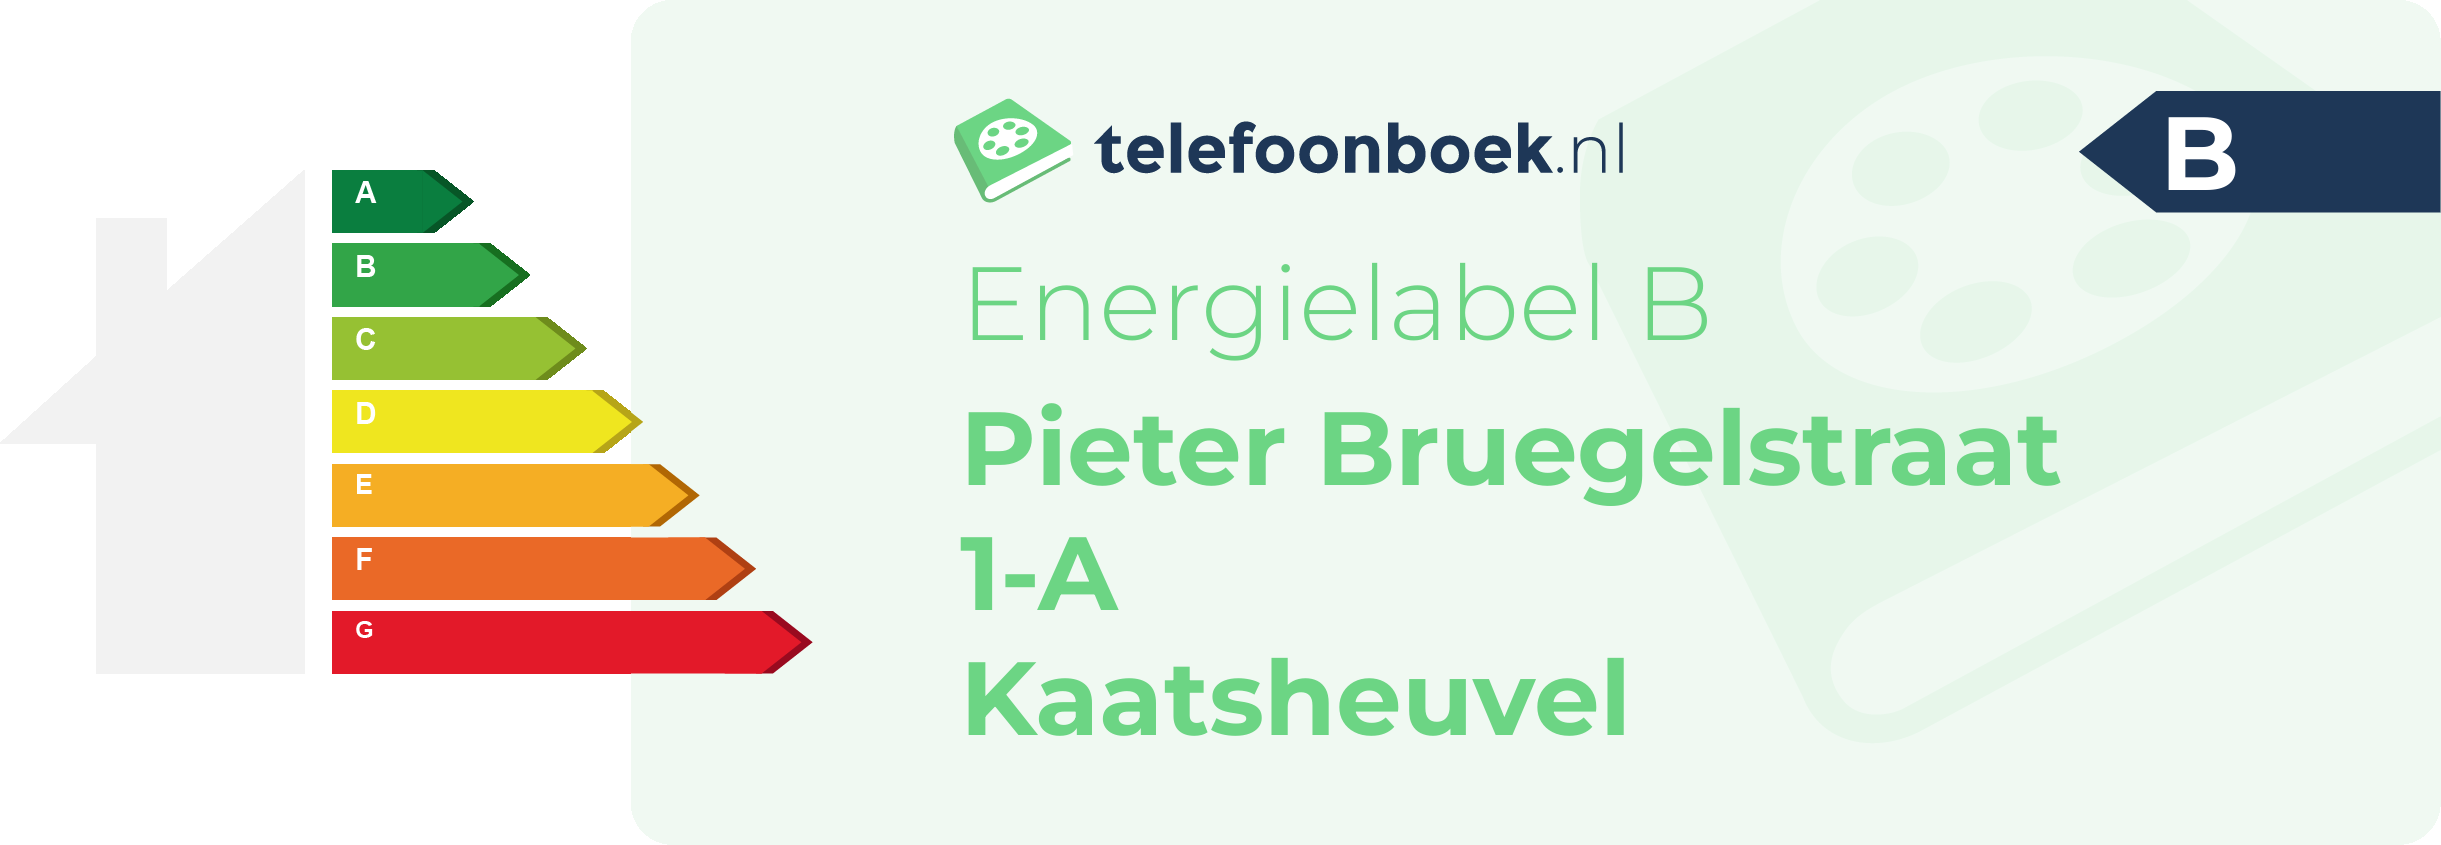 Energielabel Pieter Bruegelstraat 1-A Kaatsheuvel